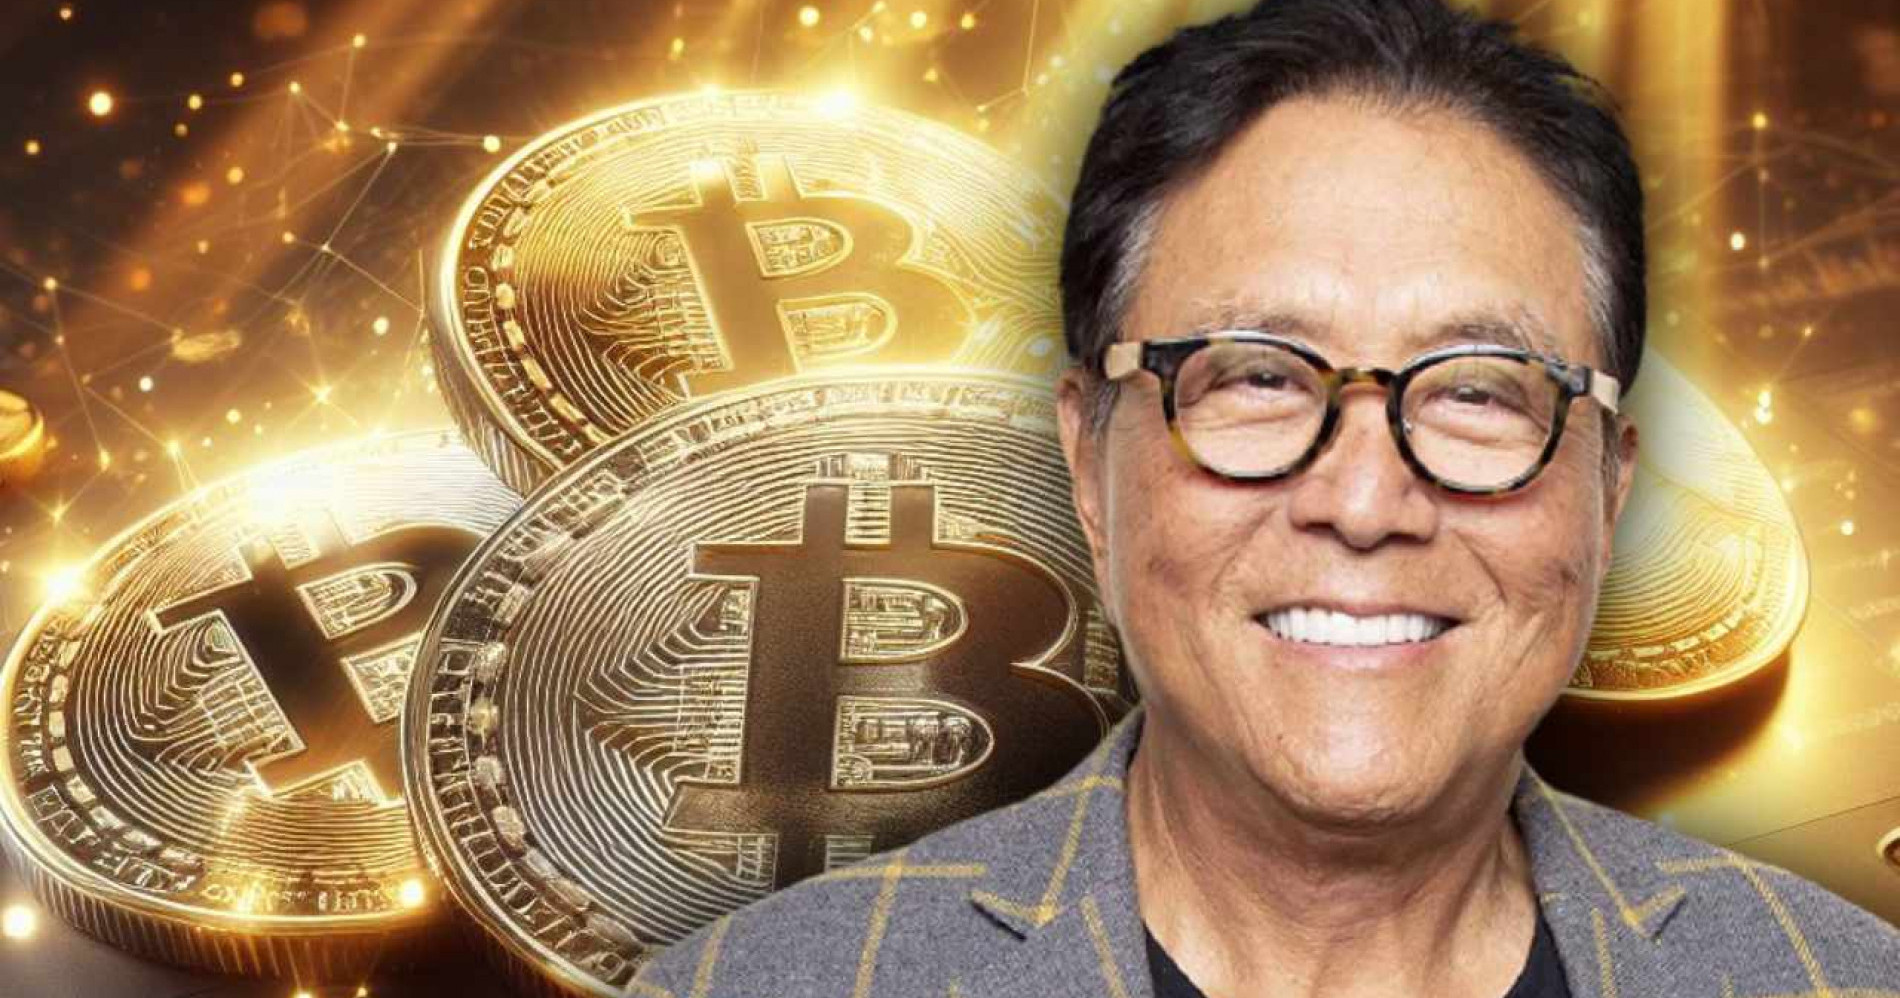 Penulis buku Rich Dad Poor Dad, Robert Kiyosaki memilih bitcoin jadi salah satu investasinya. (Sumber gambar: Bitcoin.com)